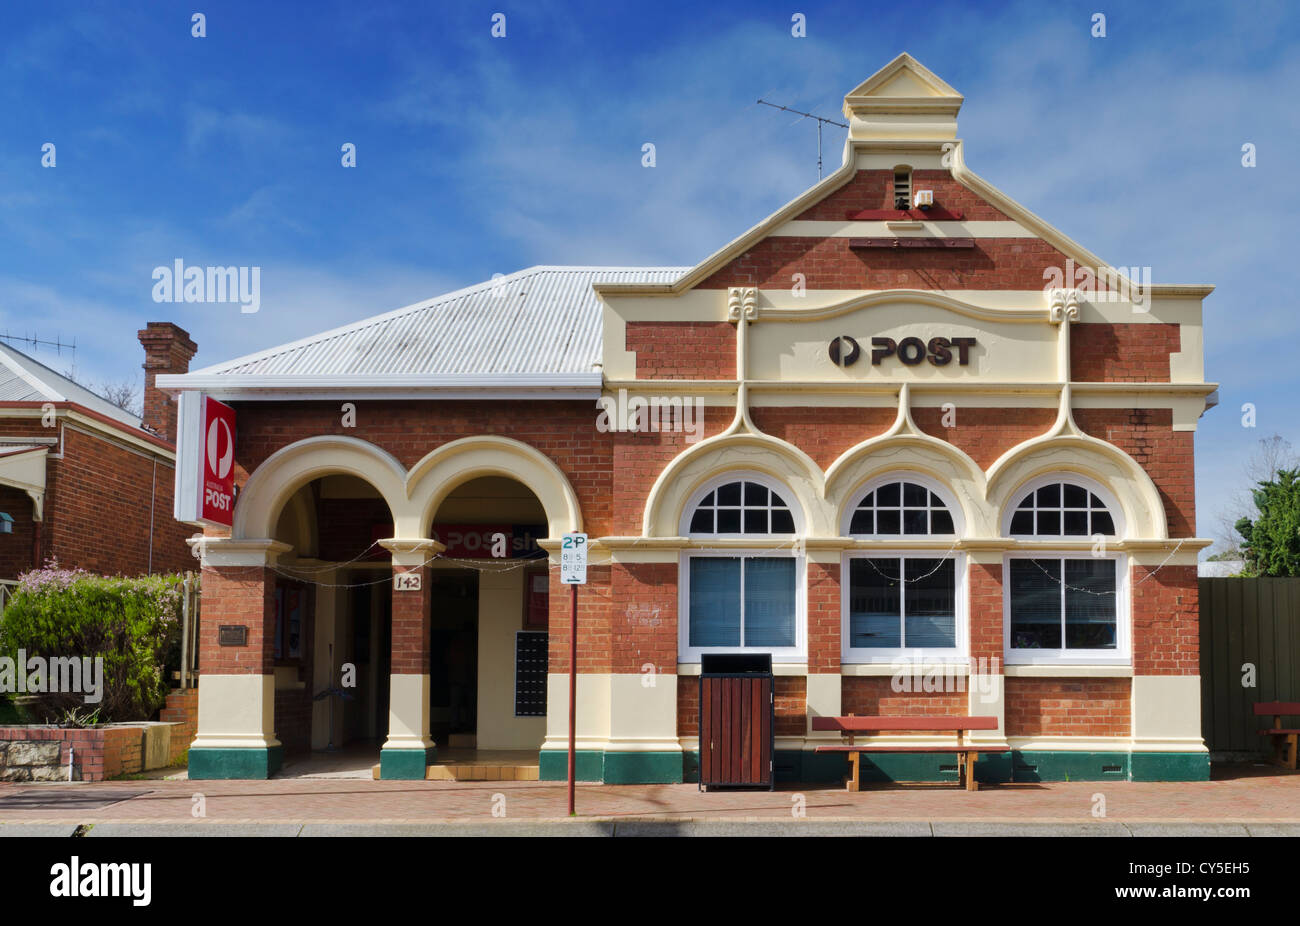 Post storico edificio per uffici a Bridgetown, Australia occidentale Foto Stock